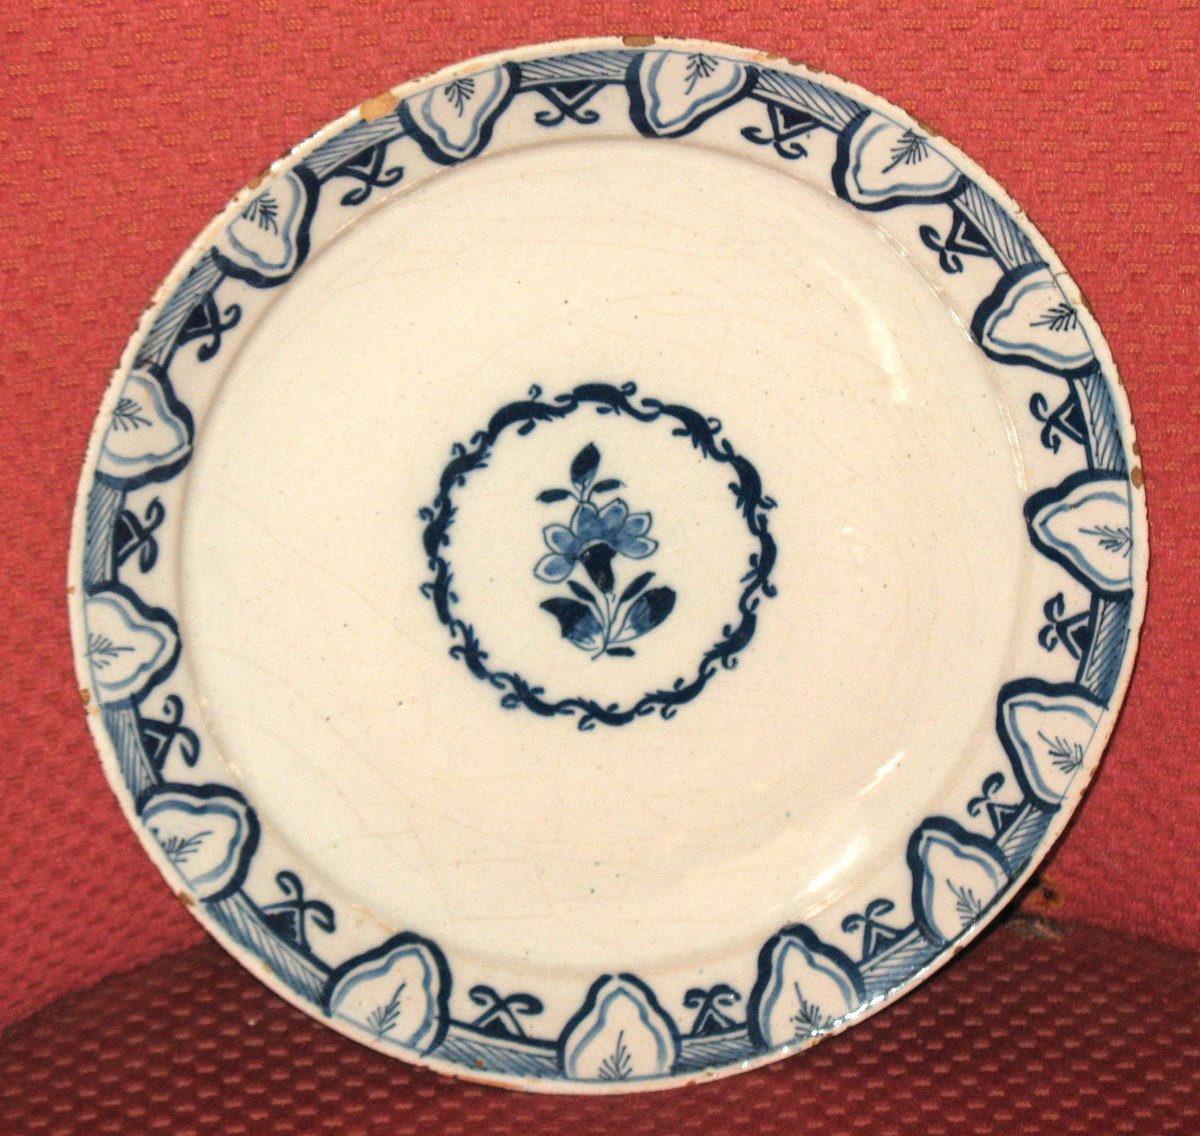 Assiette en faïence de Delft époque 17ème décor bleu monochrome